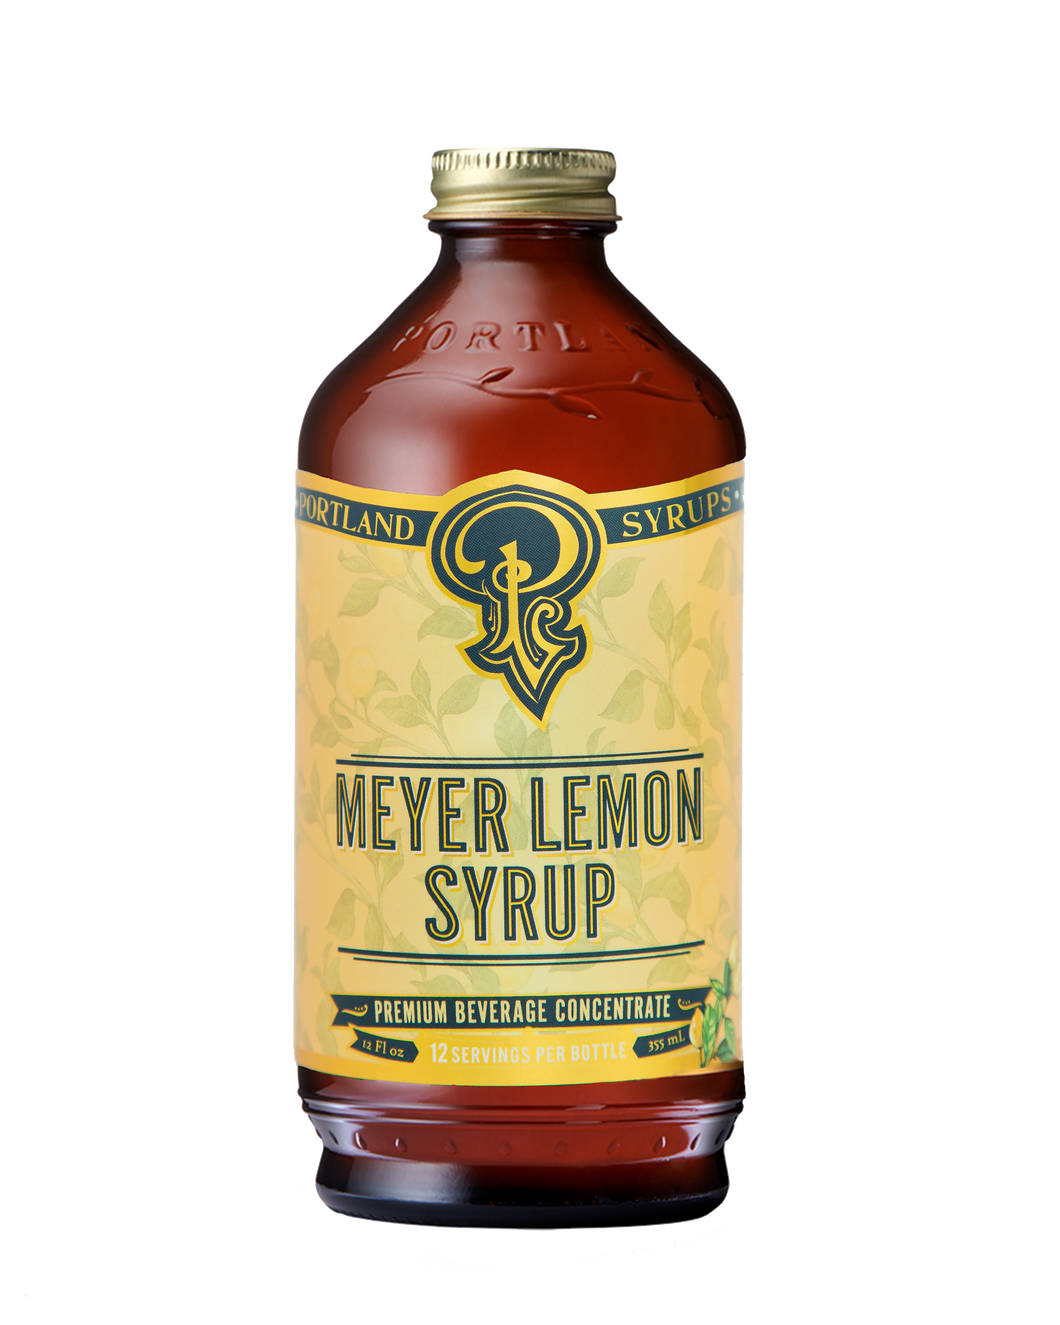 Meyer Lemon Syrup 12oz - cocktail / mocktail beverage mixer